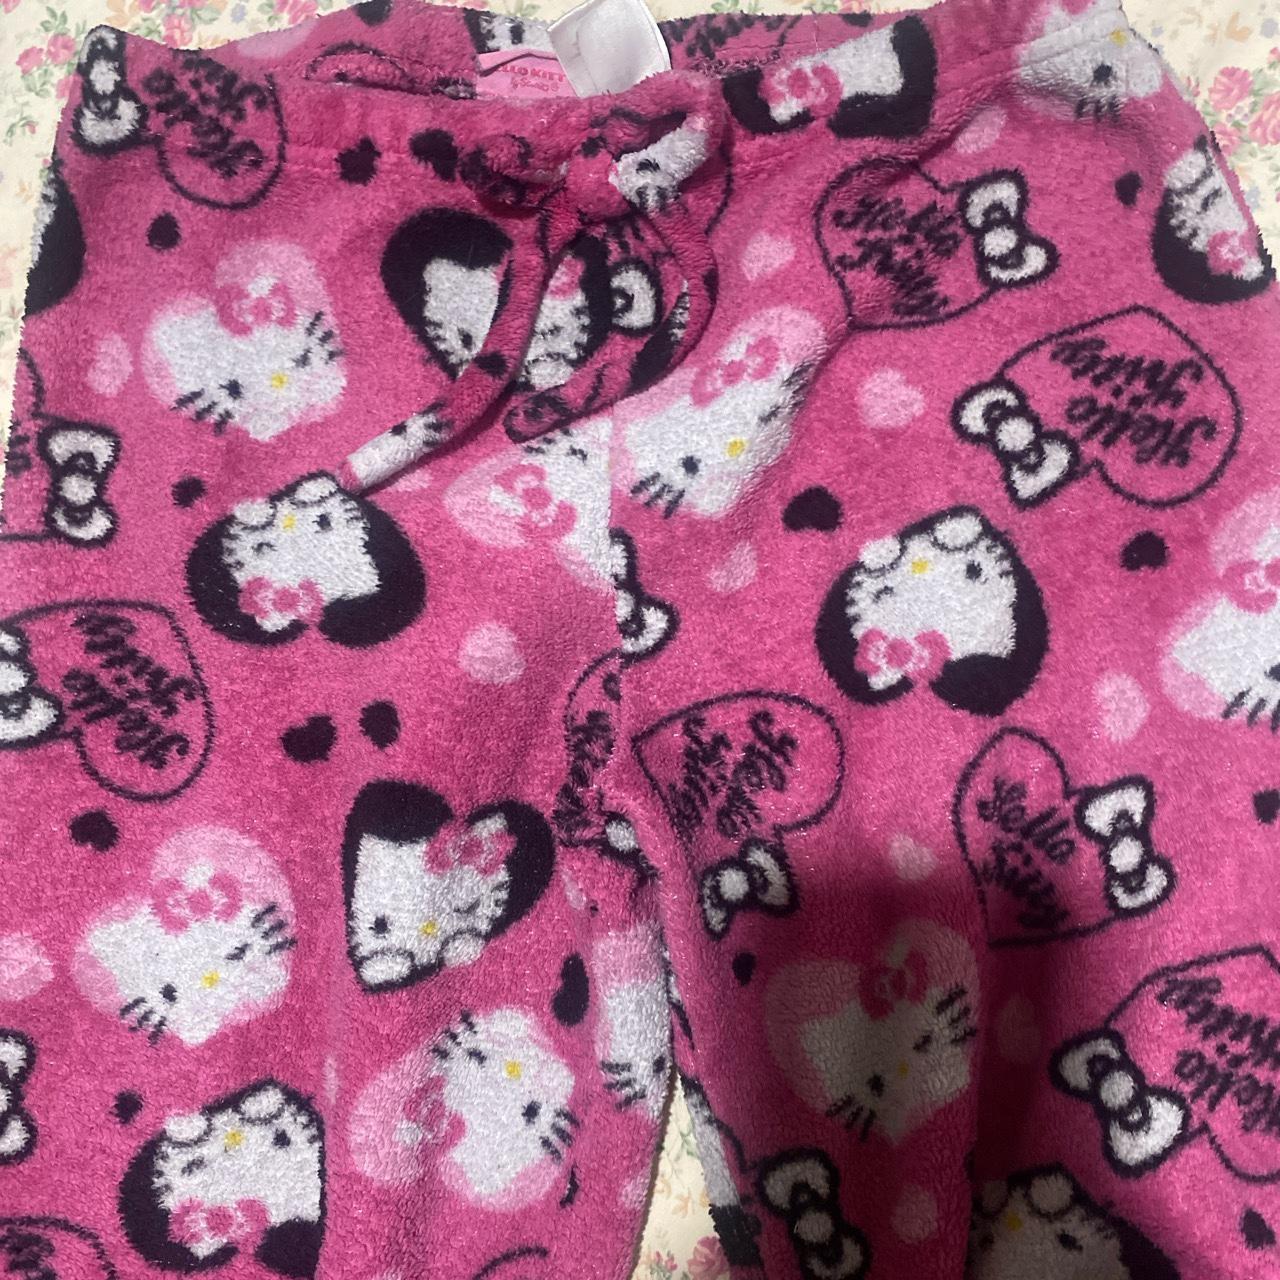 Sanrio Women's Pink and Black Pajamas | Depop